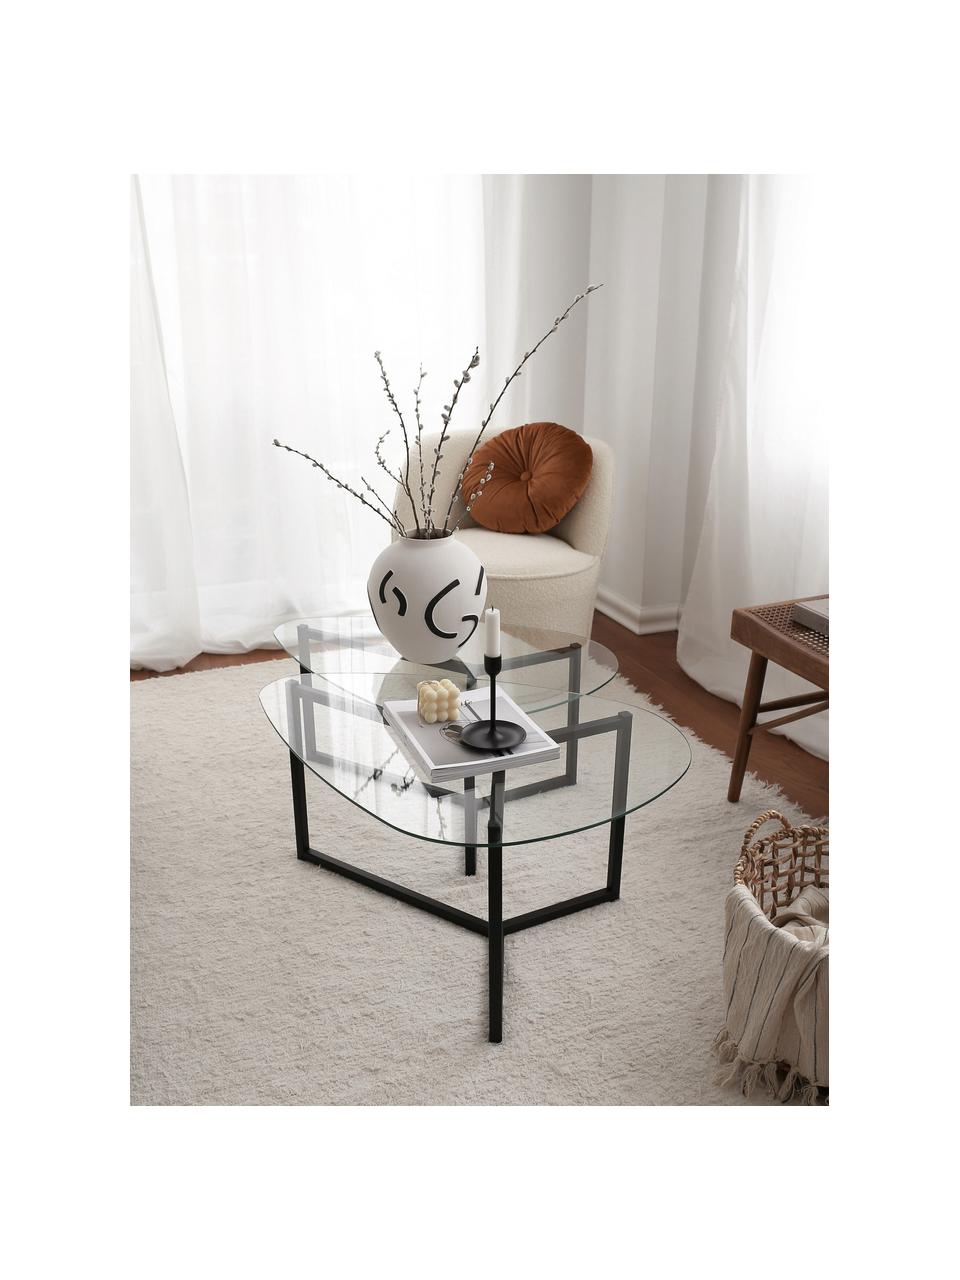 Mesas de centroTritri, 2 uds., tablero de vidrio, Tablero: vidrio laminado, Estructura: madera, Negro, transparente, Set de diferentes tamaños